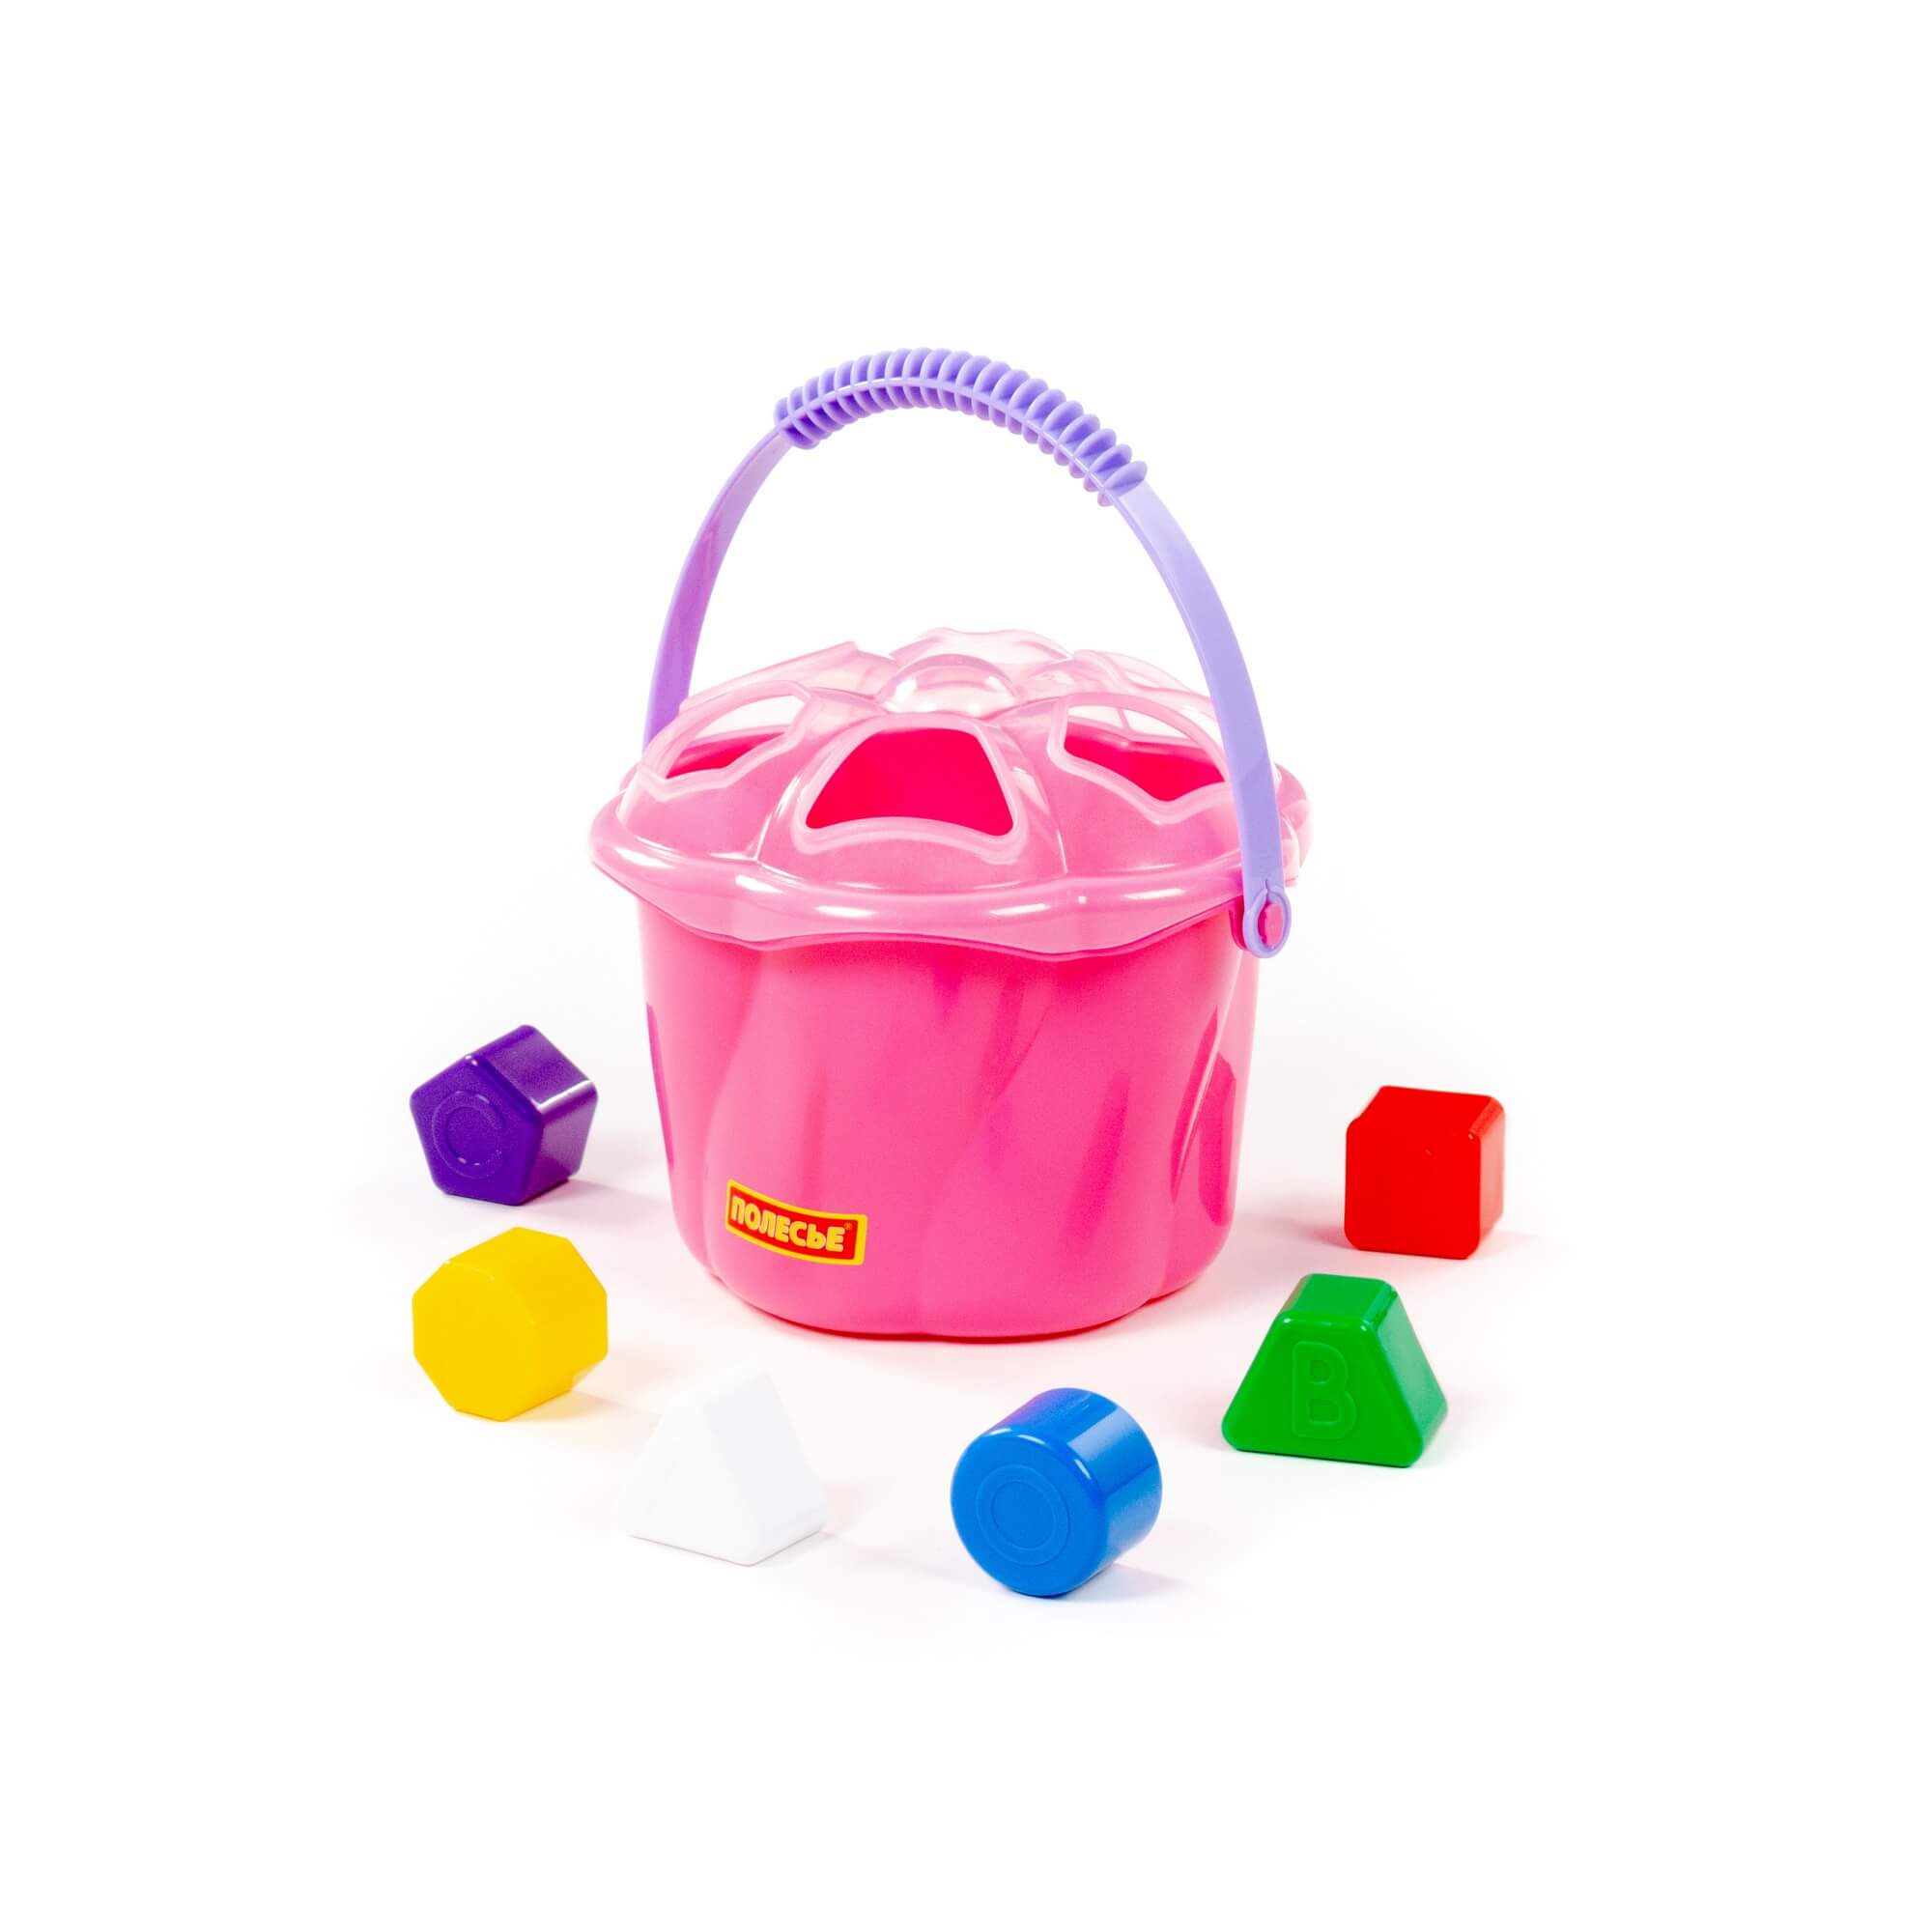 Развивающая игрушка 93479 Ведро сюрприз 6 эелементов розовый Полесье - Пенза 